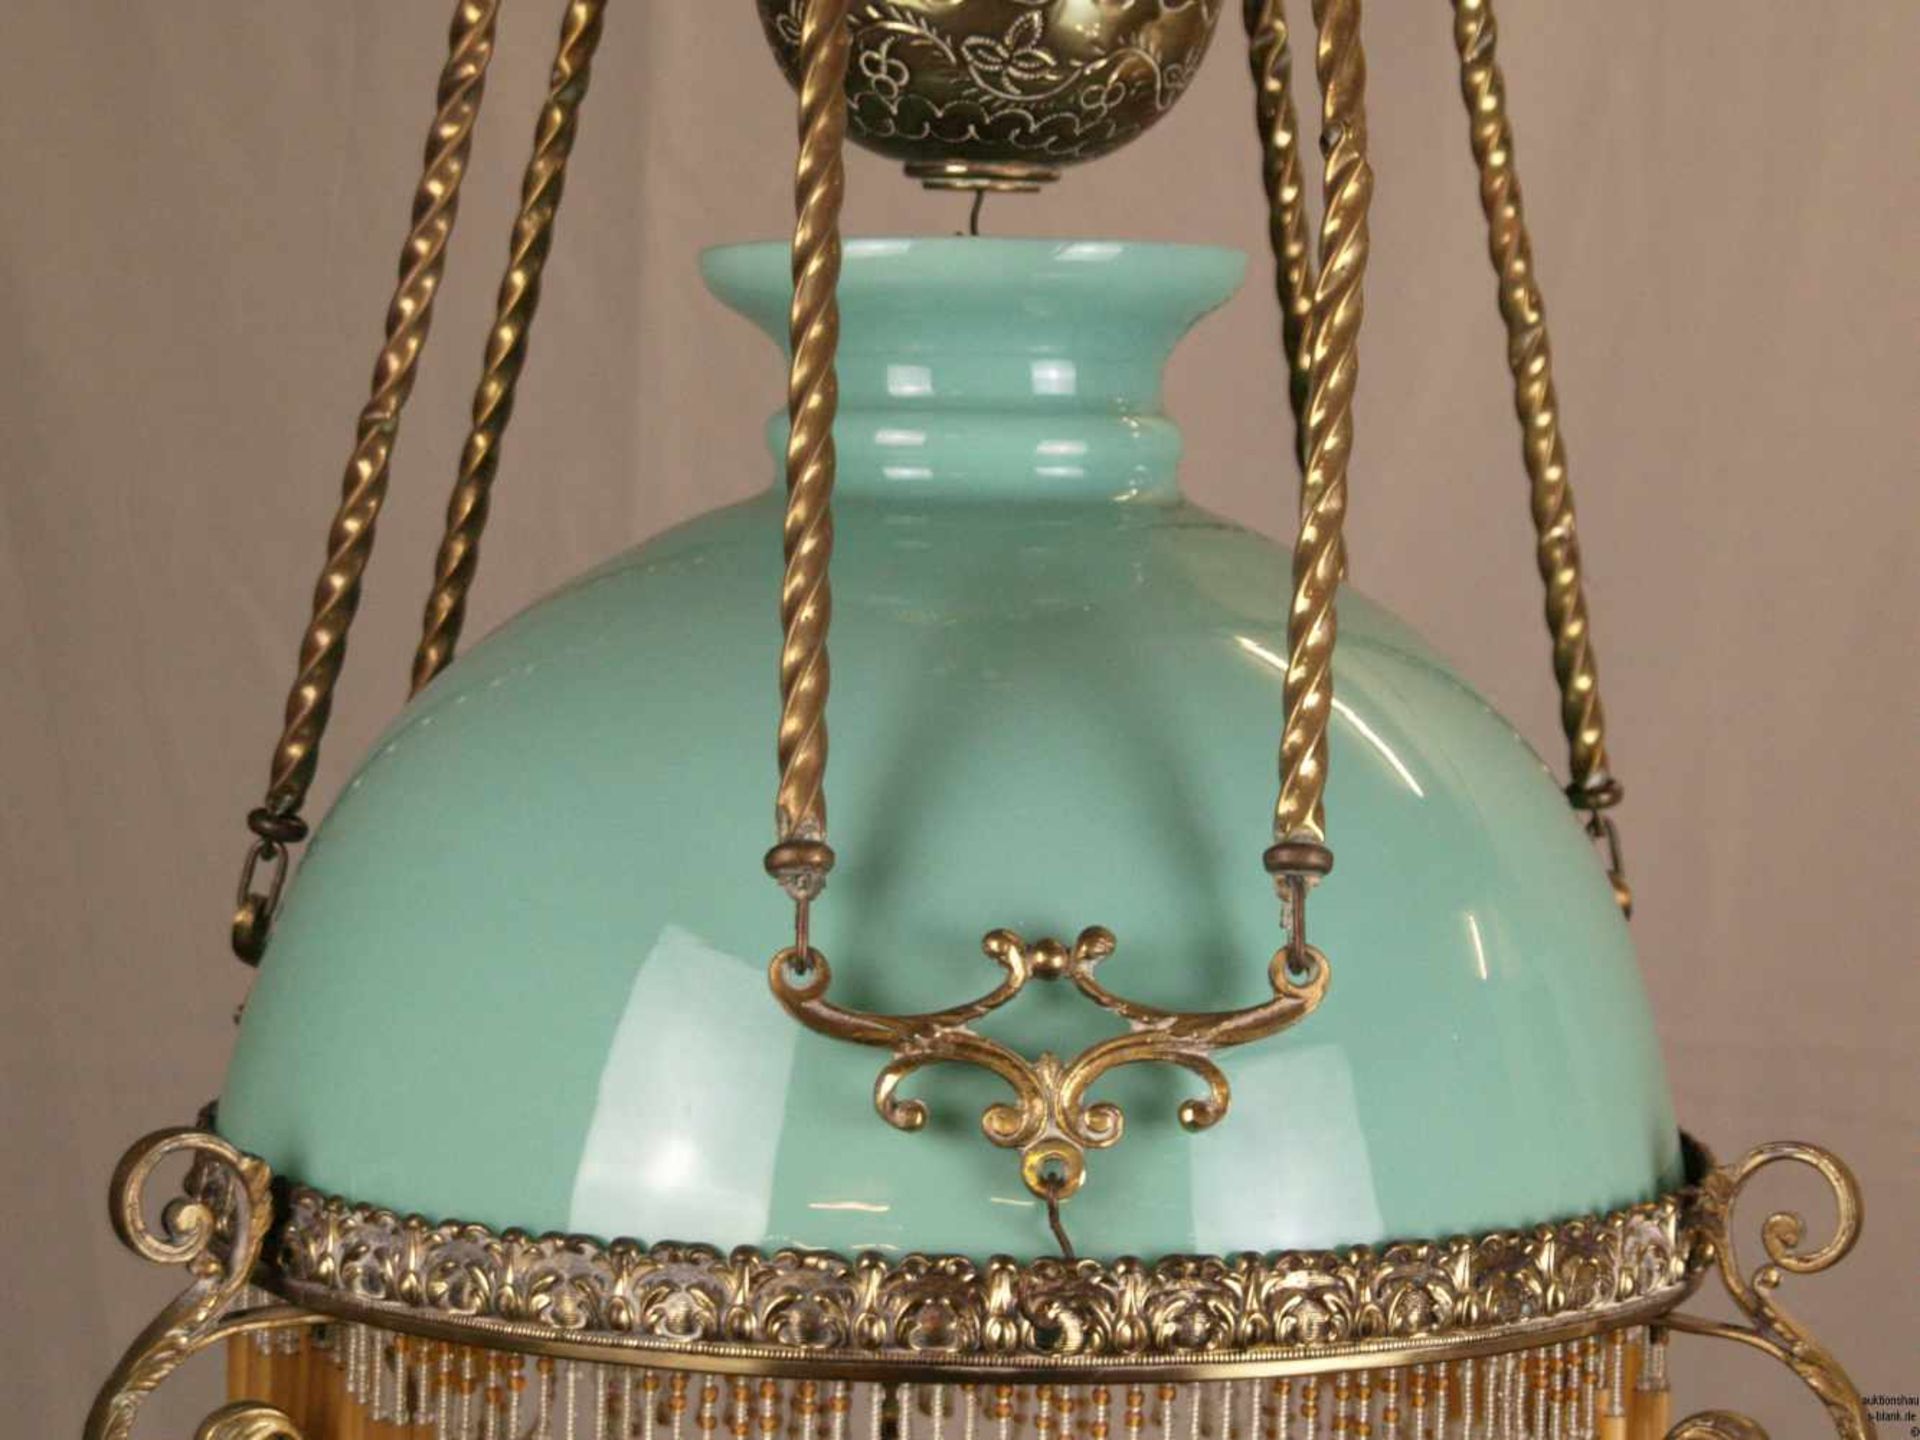 Decken- Petroleumlampe - 19. Jh., vasenförmiger Korpus, in stilisierten floralen Formen durchbrochen - Bild 3 aus 10